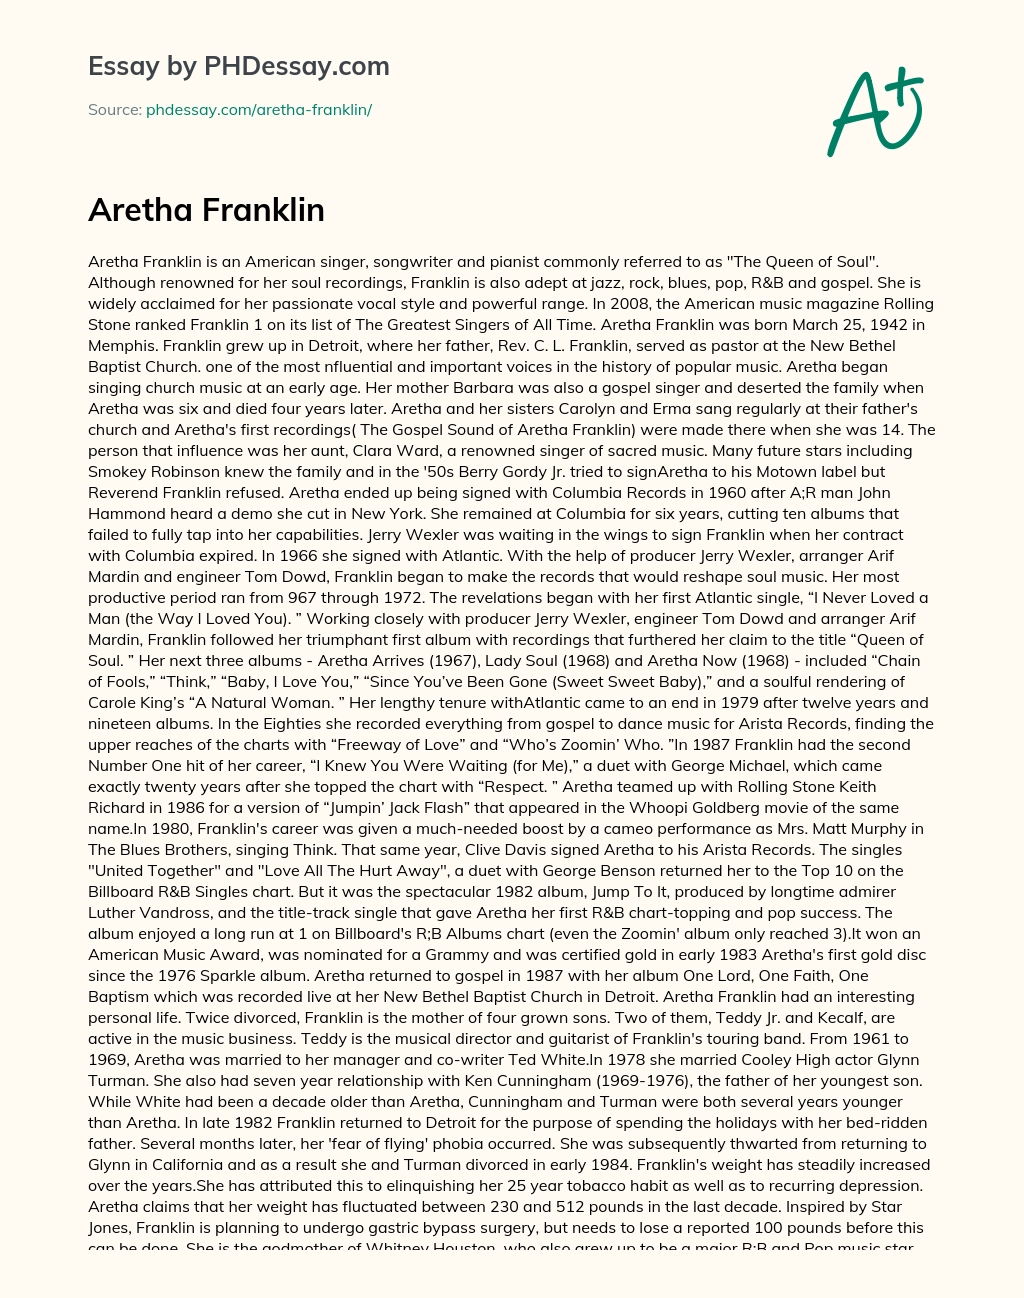 Aretha Franklin essay